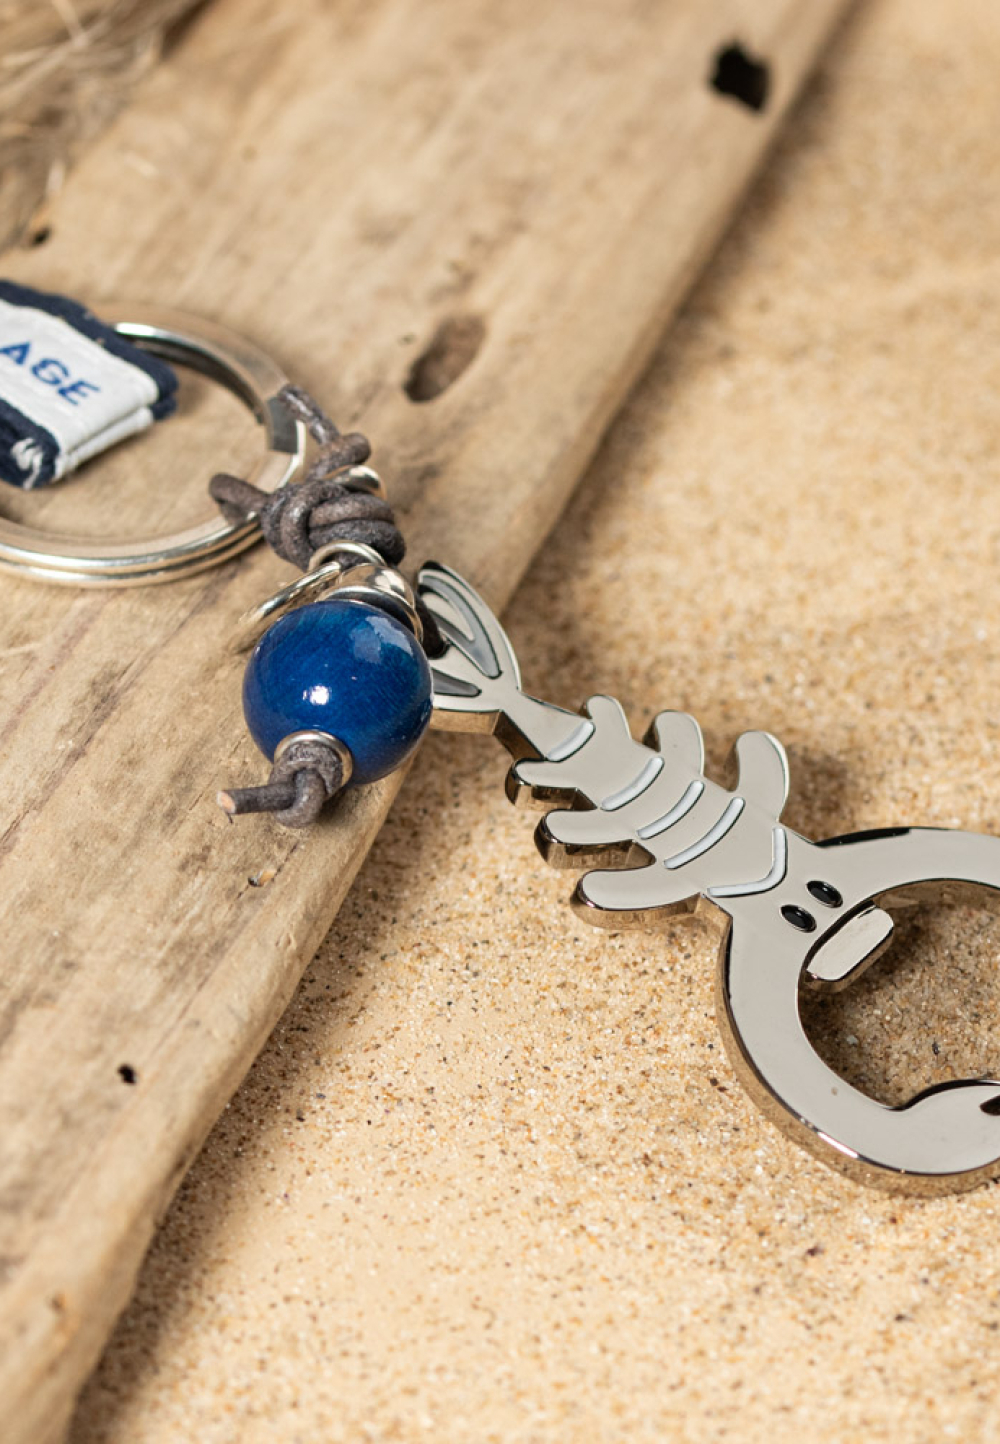 Porte-clefs Oléron bleu marine et argenté - Retour de plage